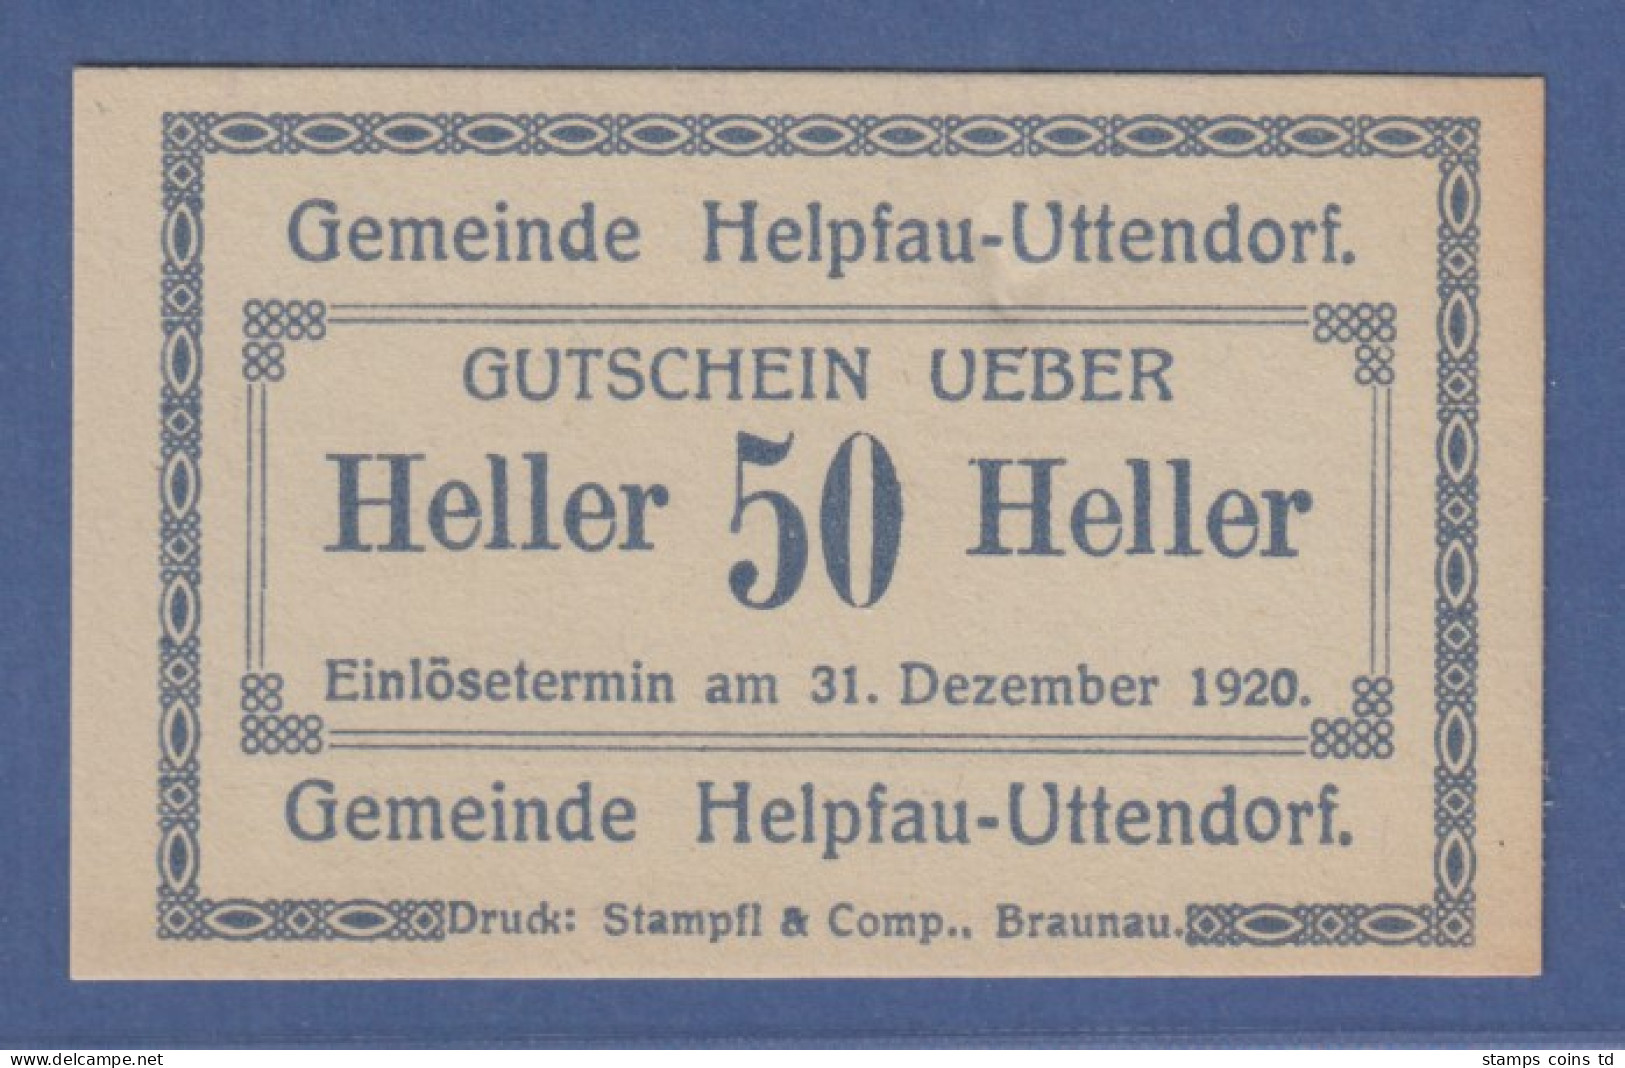 Banknote Österreich Gutschein über 50 Heller Gemeinde Helpfau-Uttendorf, 1920 - Autriche